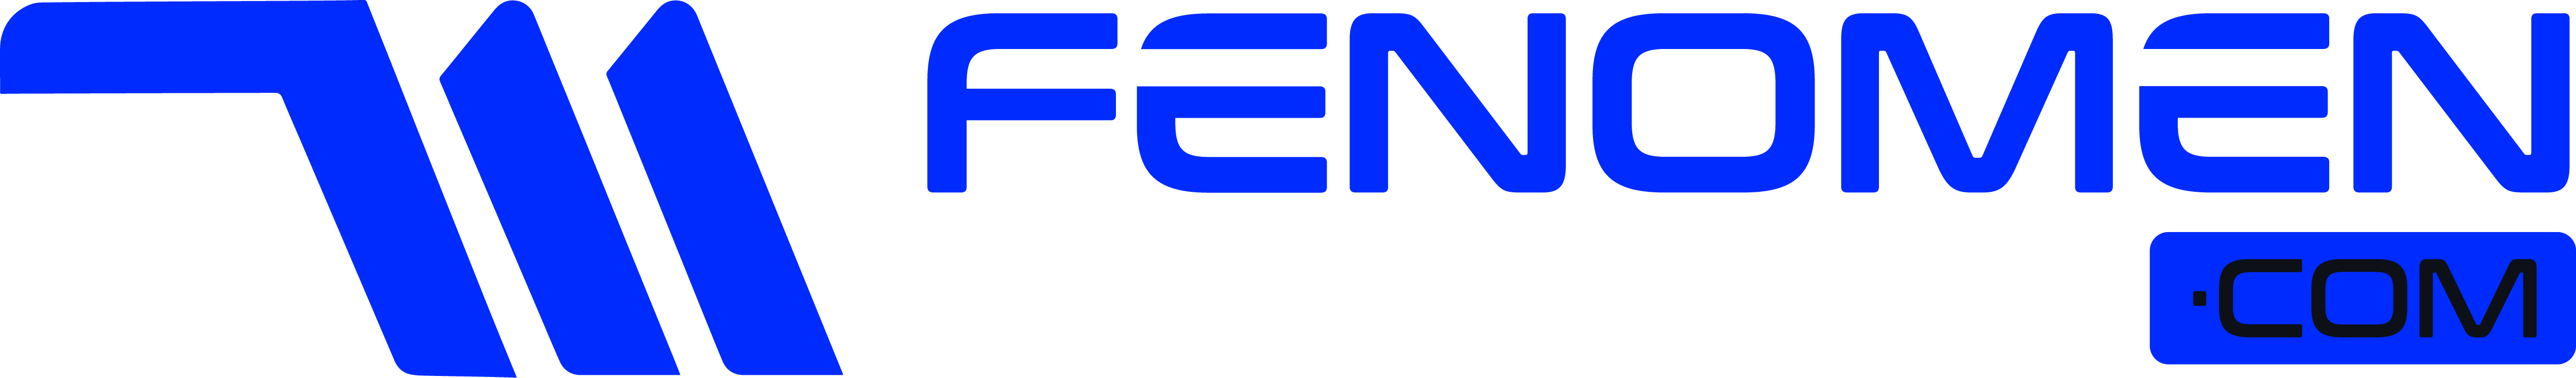 Fenomenmarketin.com | Türkiye'nin Sağlayıcı SMM Paneli